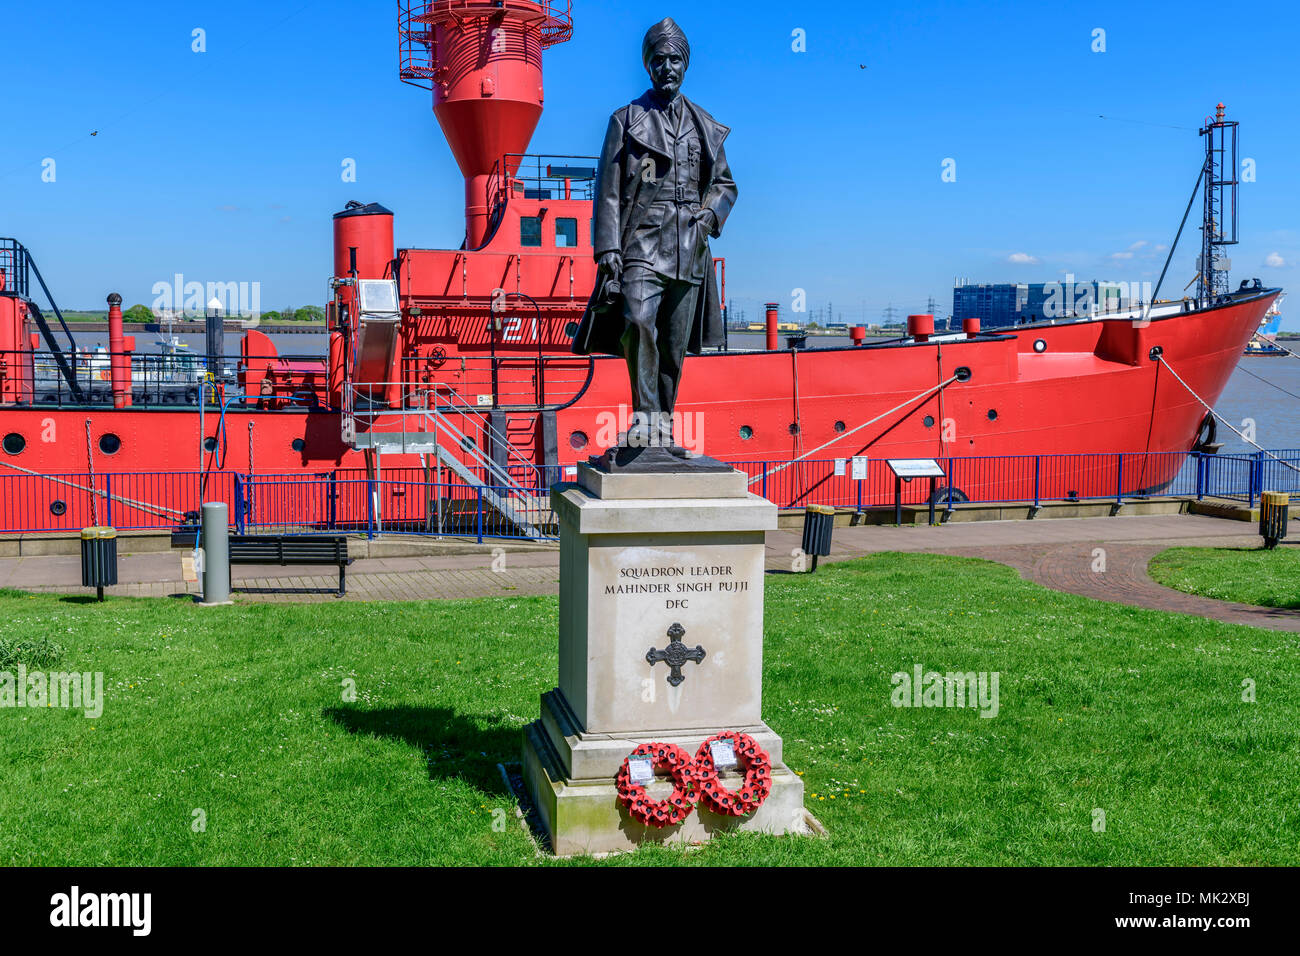 Statua commemorativa di squadron leader Mahinda Singh Pujji DFC. Banca di fiume Gravesend Kent Foto Stock